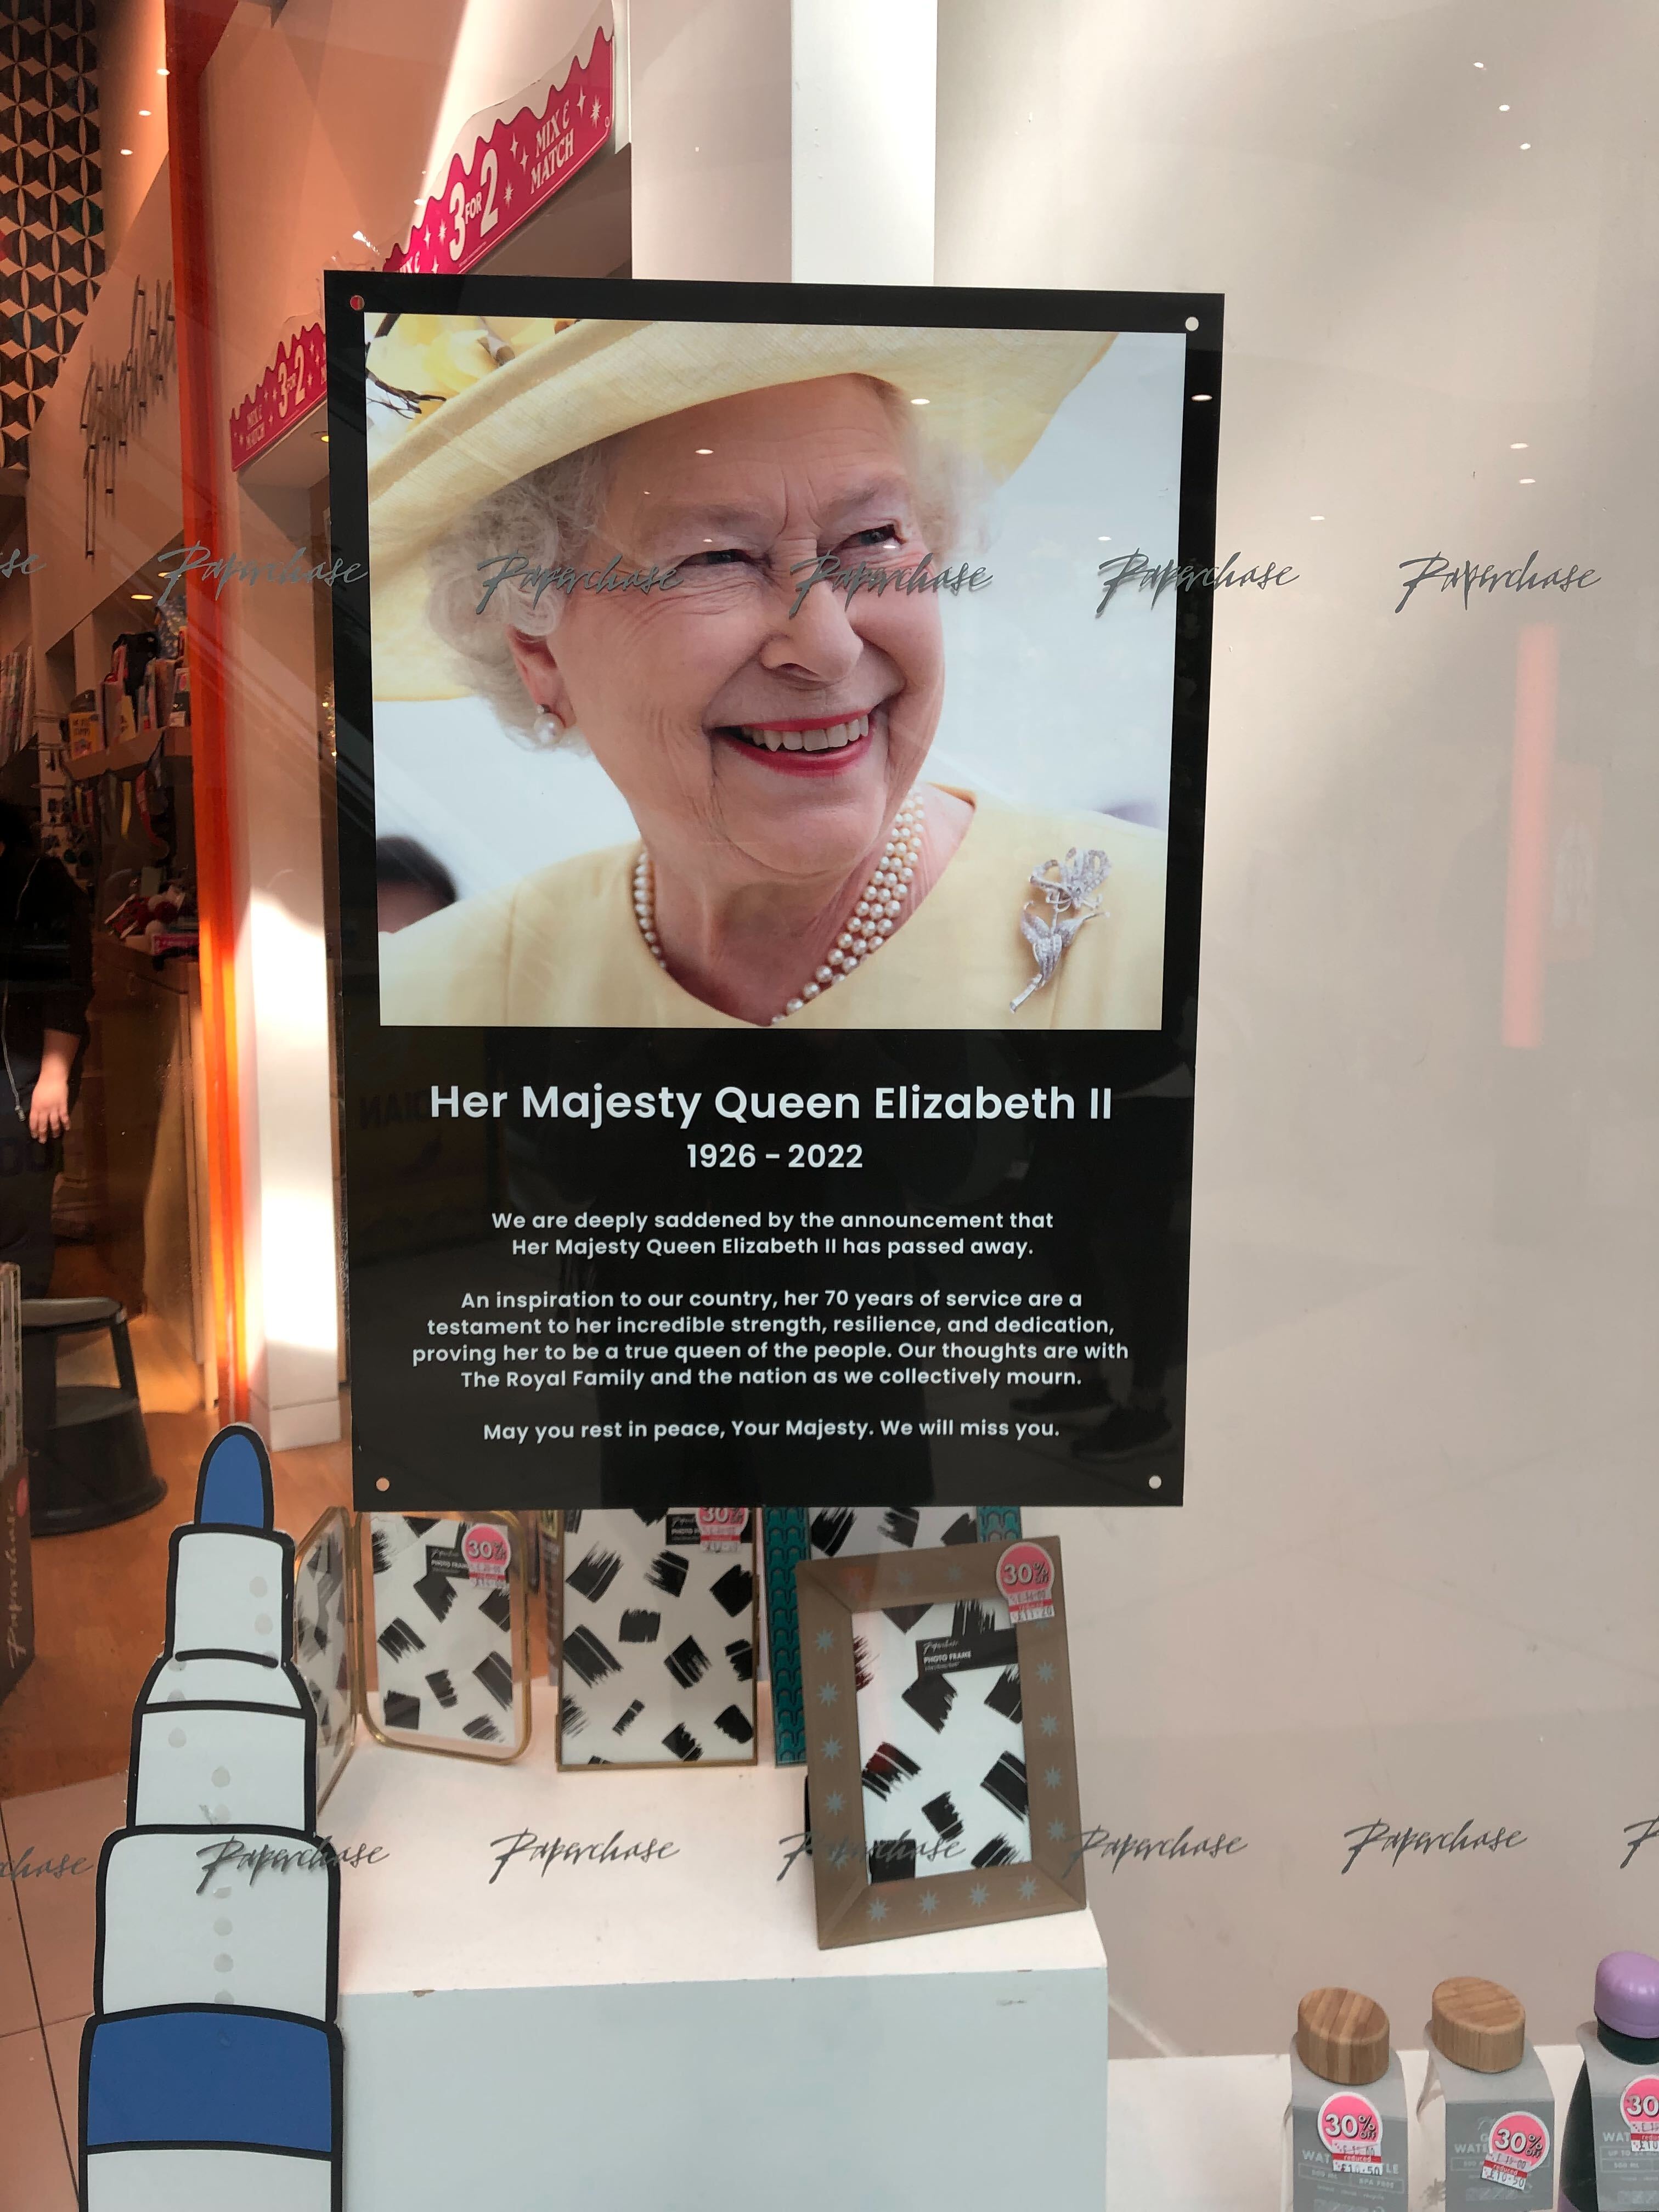 Im Schaufenster einer Papeterie wird Queen Elizabeth II. als "Inspiration für unser Land" betitelt.Und weiter: "Ihre 70 Dienstjahre sind ein Beweis für ihre unglaubliche Stärke, Belastbarkeit und Hingabe, die sie als wahre Königin des Volkes ausweisen. Unsere Gedanken sind bei der königlichen Familie und der ganzen Nation, während wir gemeinsam trauern."